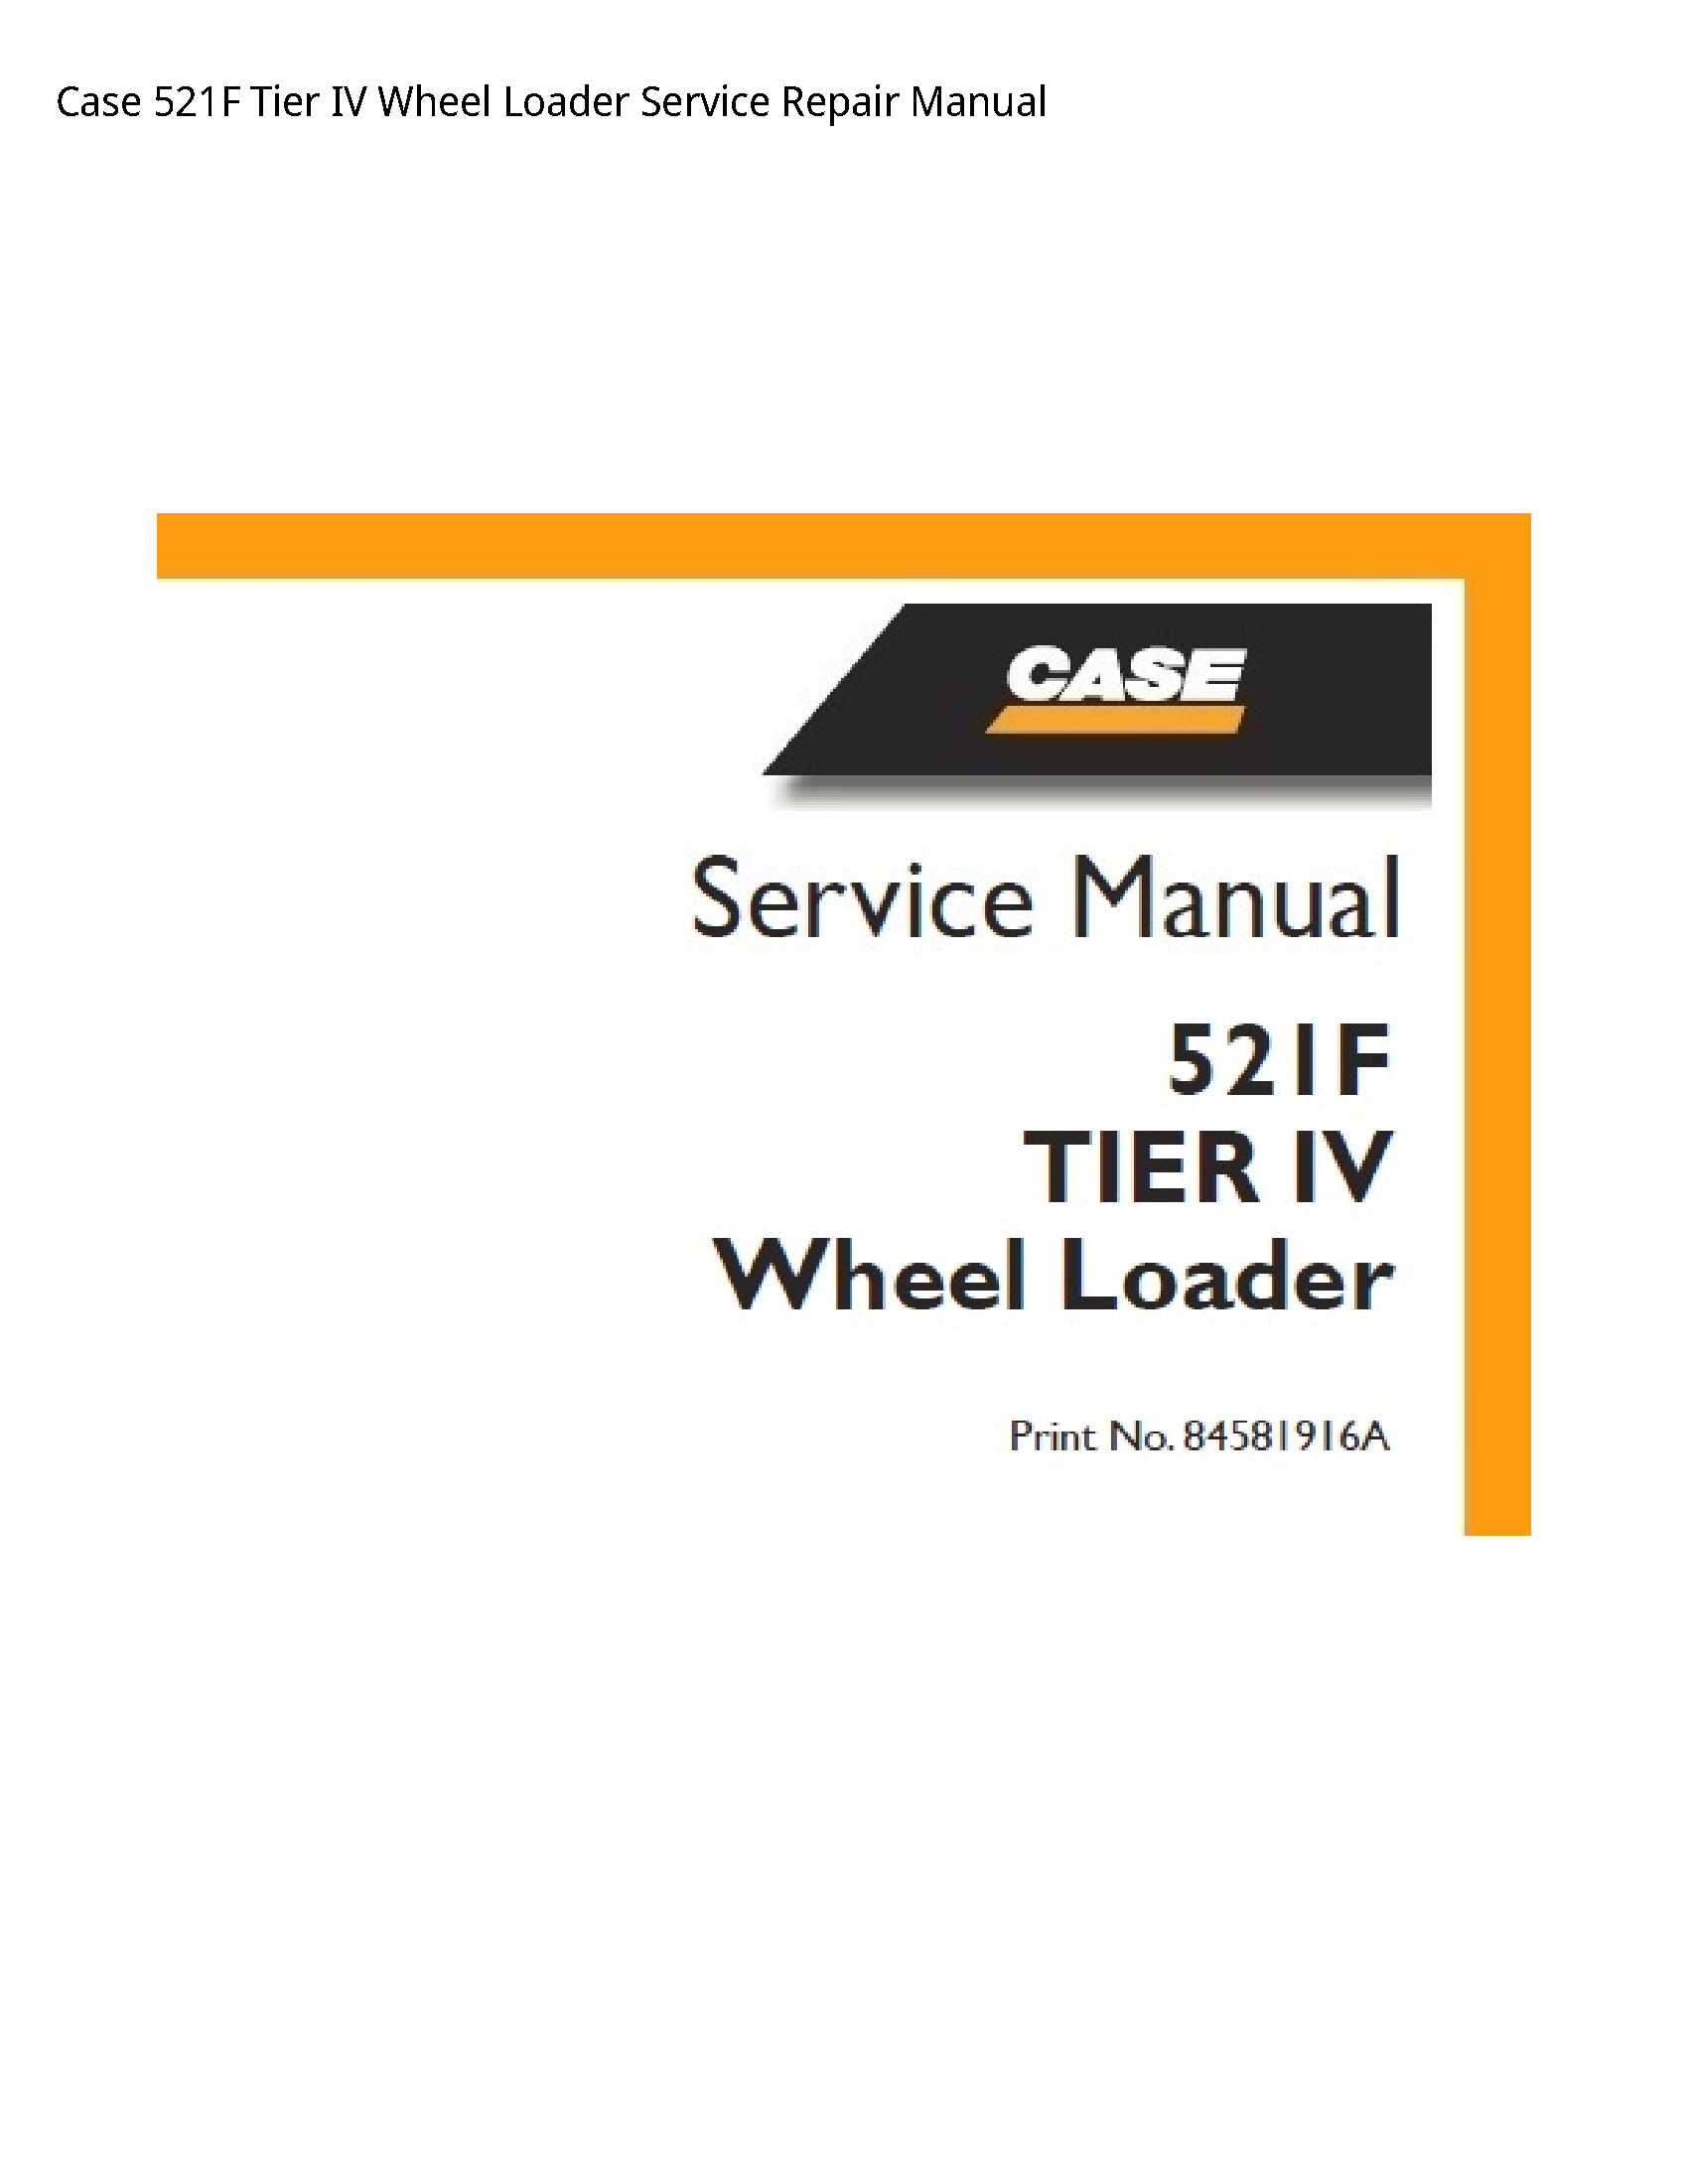 Case/Case IH 521F Tier IV Wheel Loader manual